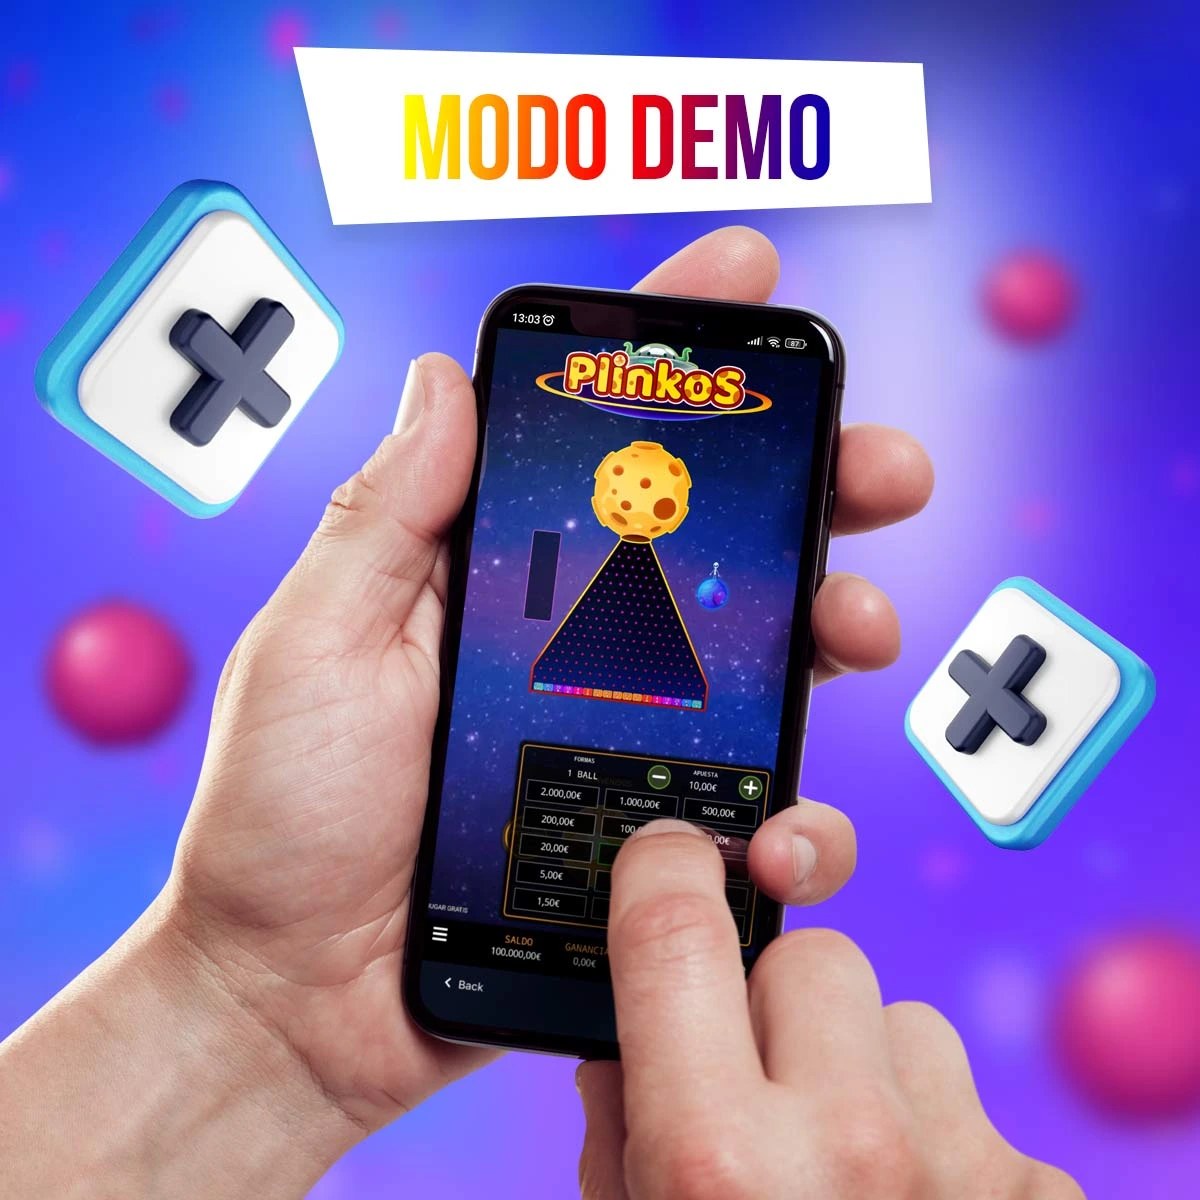 La versión demo del juego Plinko 1win te permitirá practicar la mejor estrategia sin riesgo de perder dinero